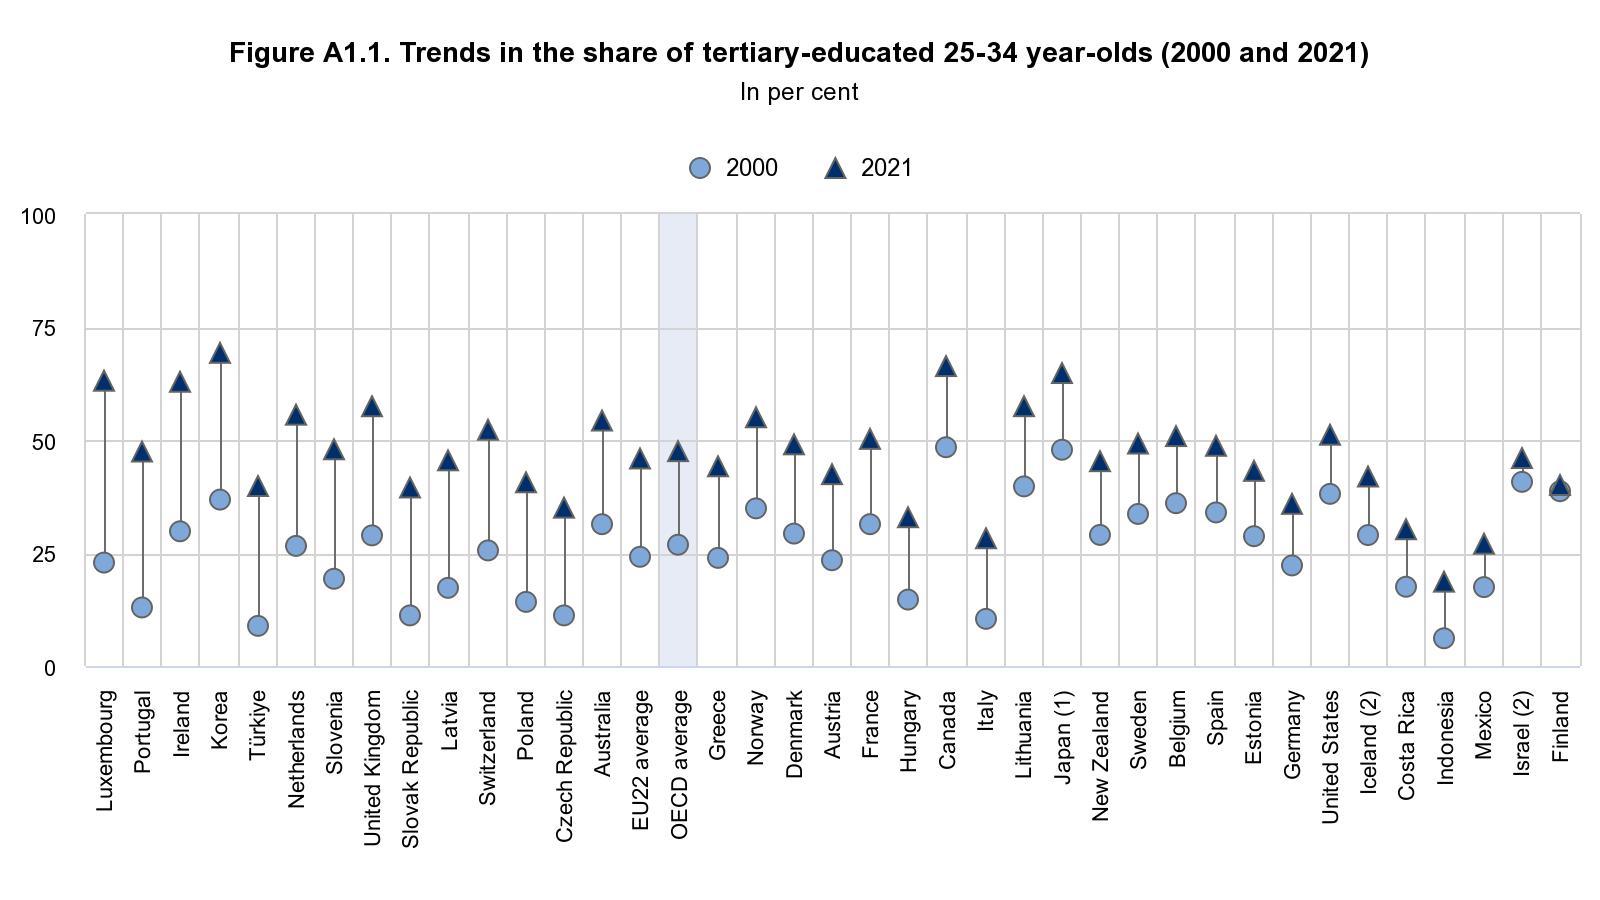 Kuvassa on kuvaaja, joka kertoo korkeakoulutettujen suhteellisen osuuden muutosta 25-34-vuotiaissa vuosina 2000-2021 OECD-maissa. Kuvaajan mukaan eniten korkeakoulutettujen nuorten osuus on kasvanut näinä vuosina Luxemburgissa, vähiten Suomessa. 